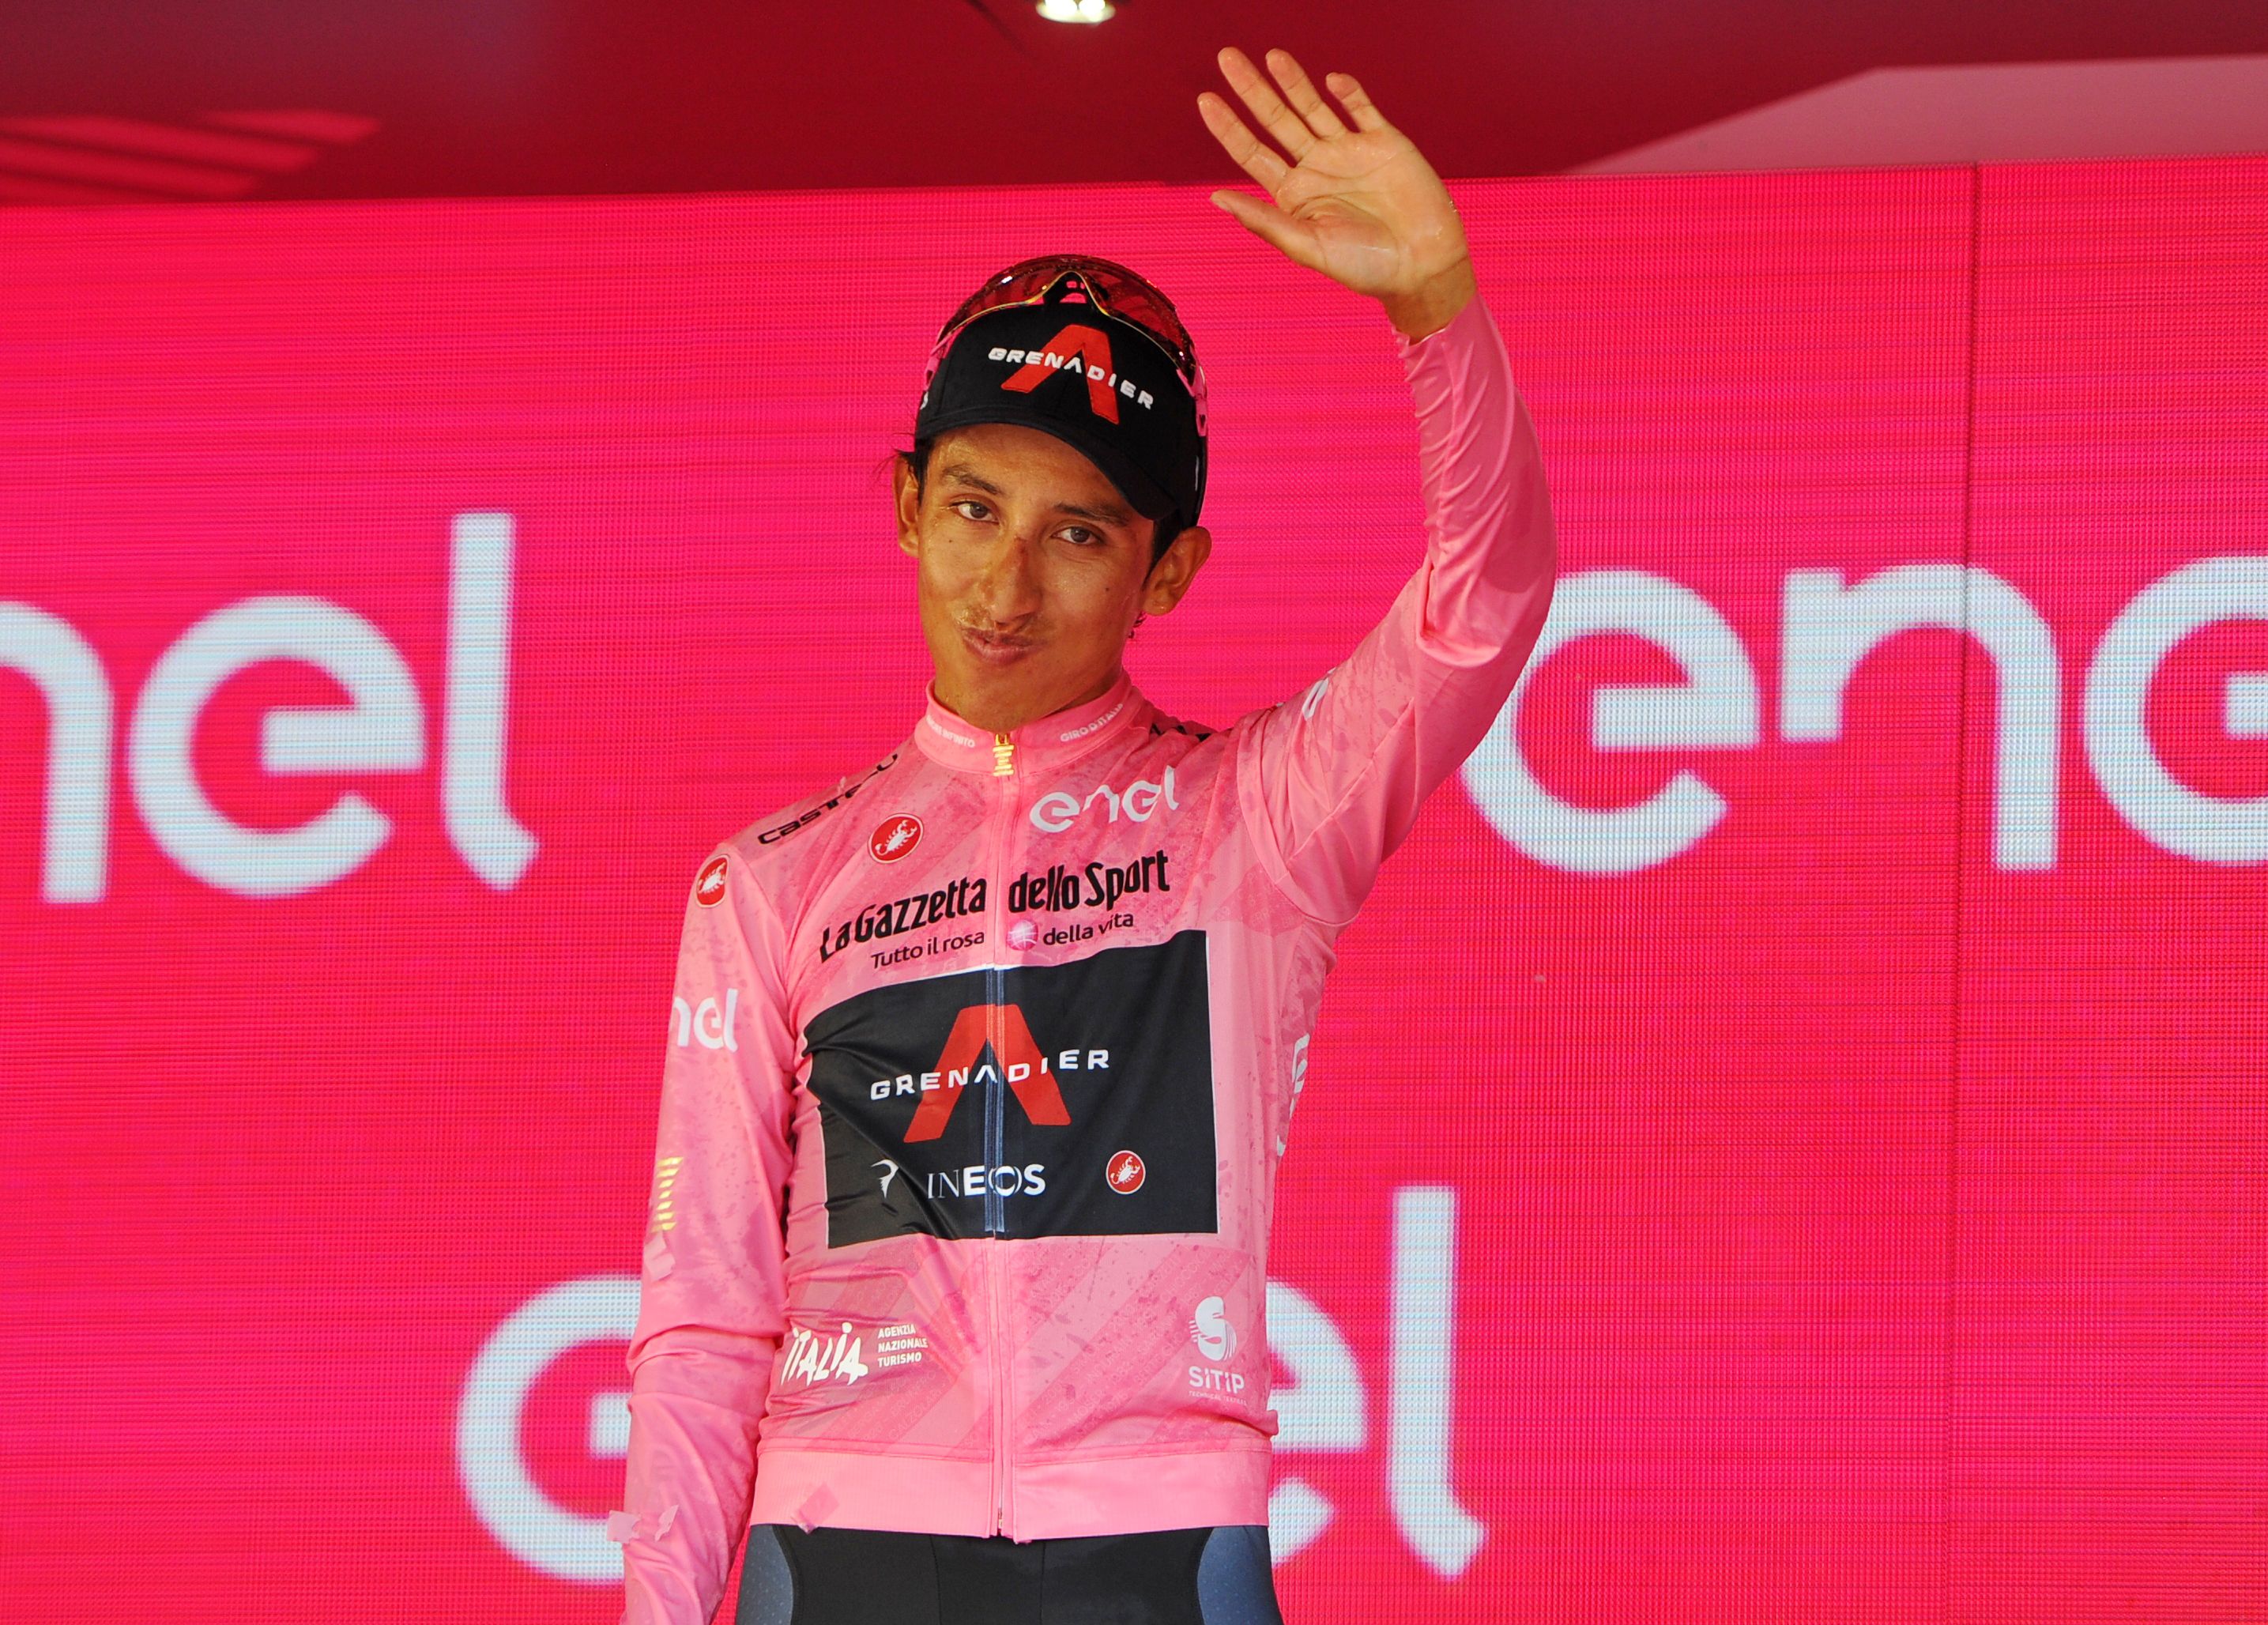 El día que Egan Bernal ganó una etapa del Giro de Italia